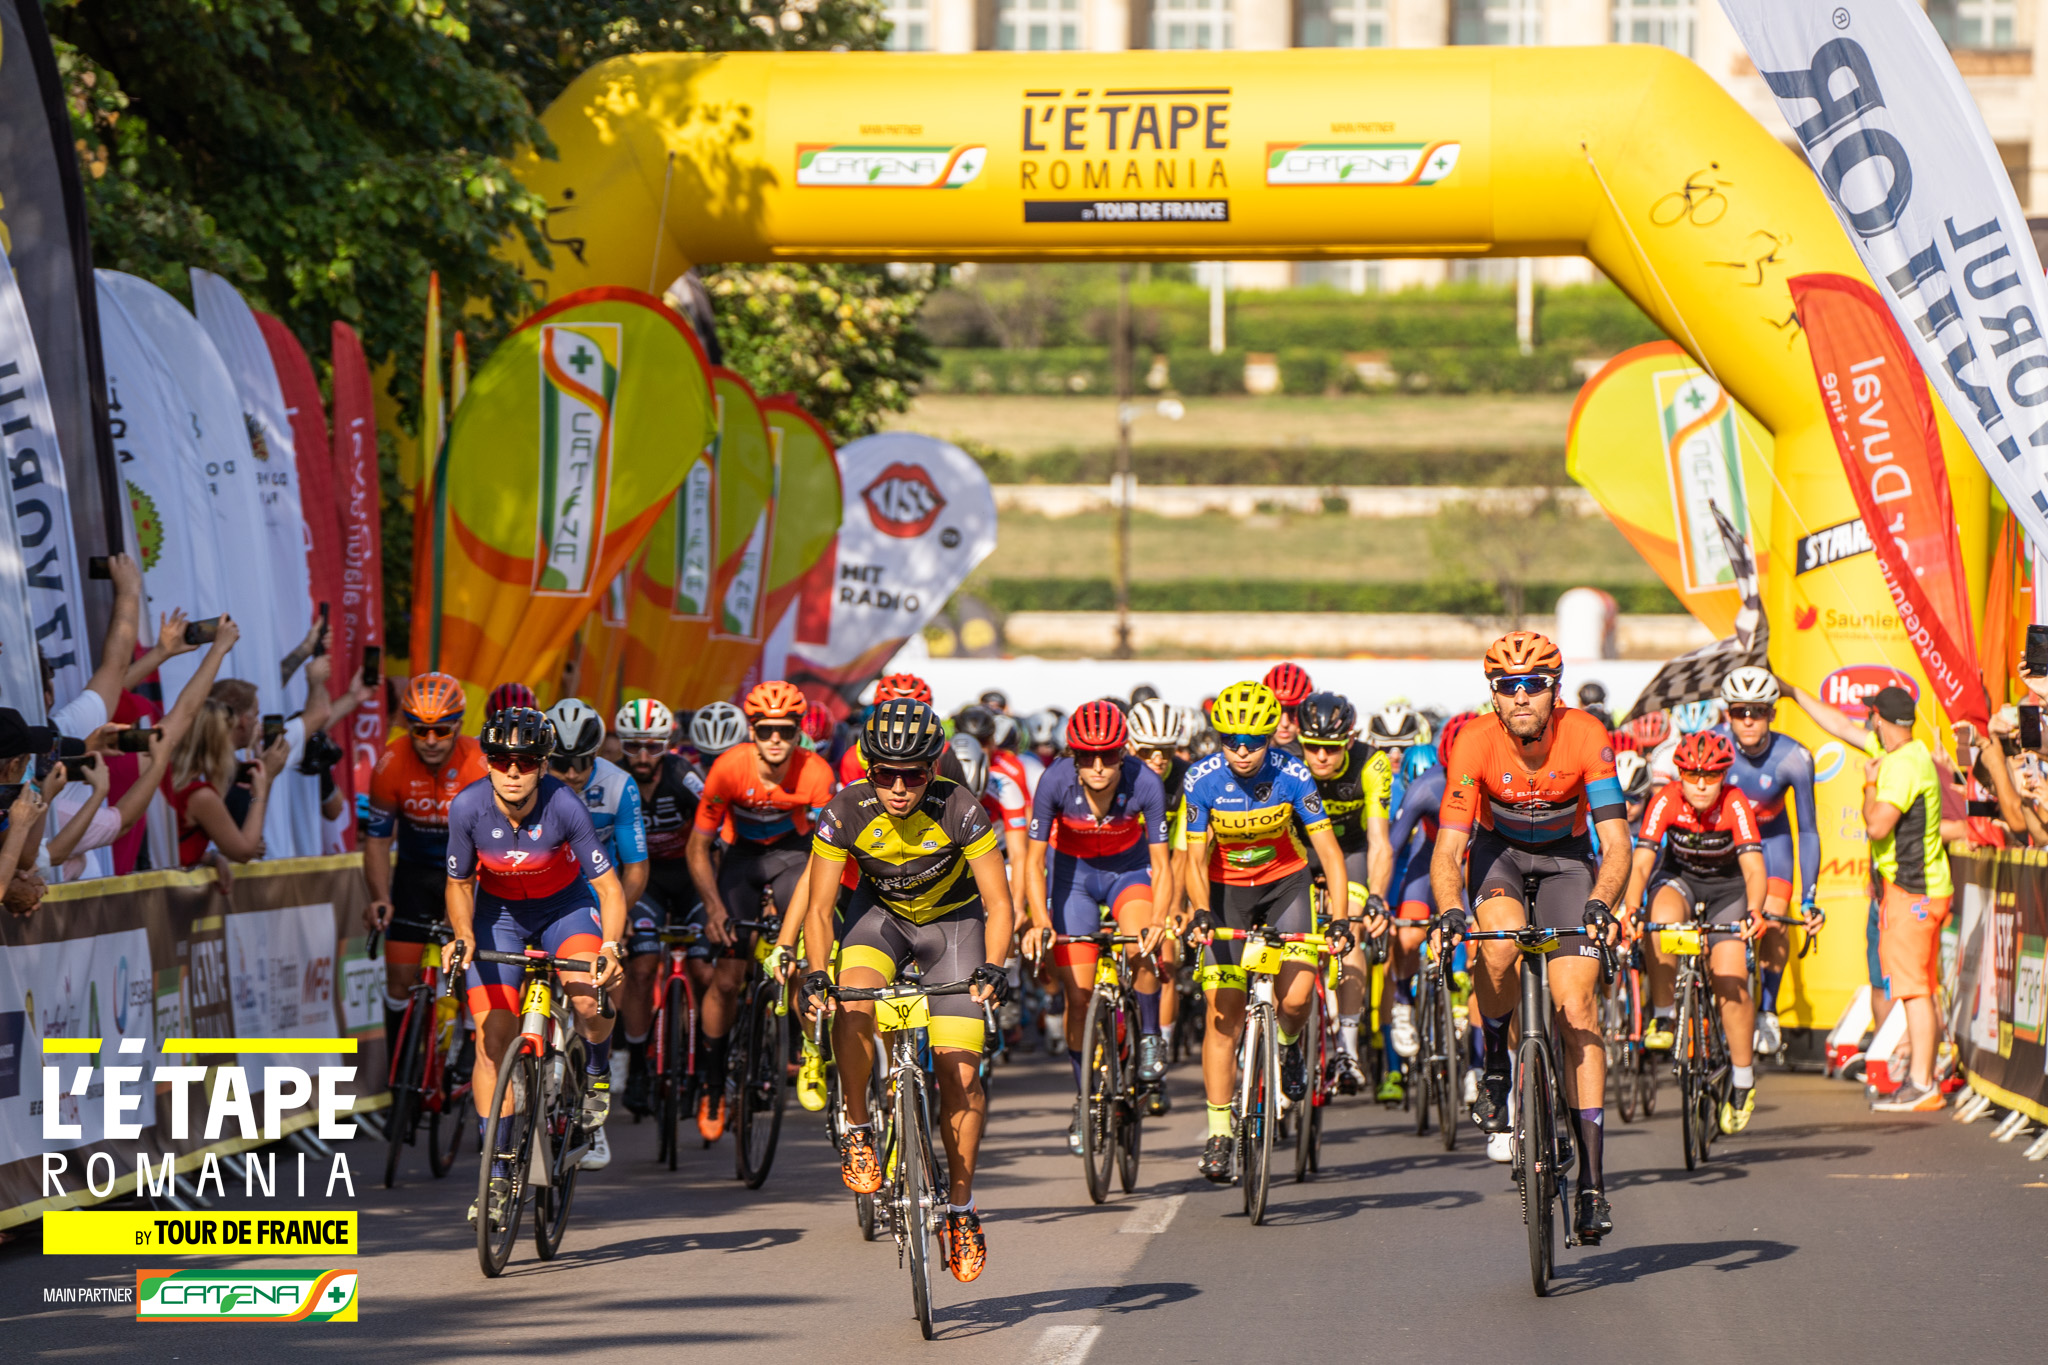 Unstoppable la L’Étape Romania by Tour de France